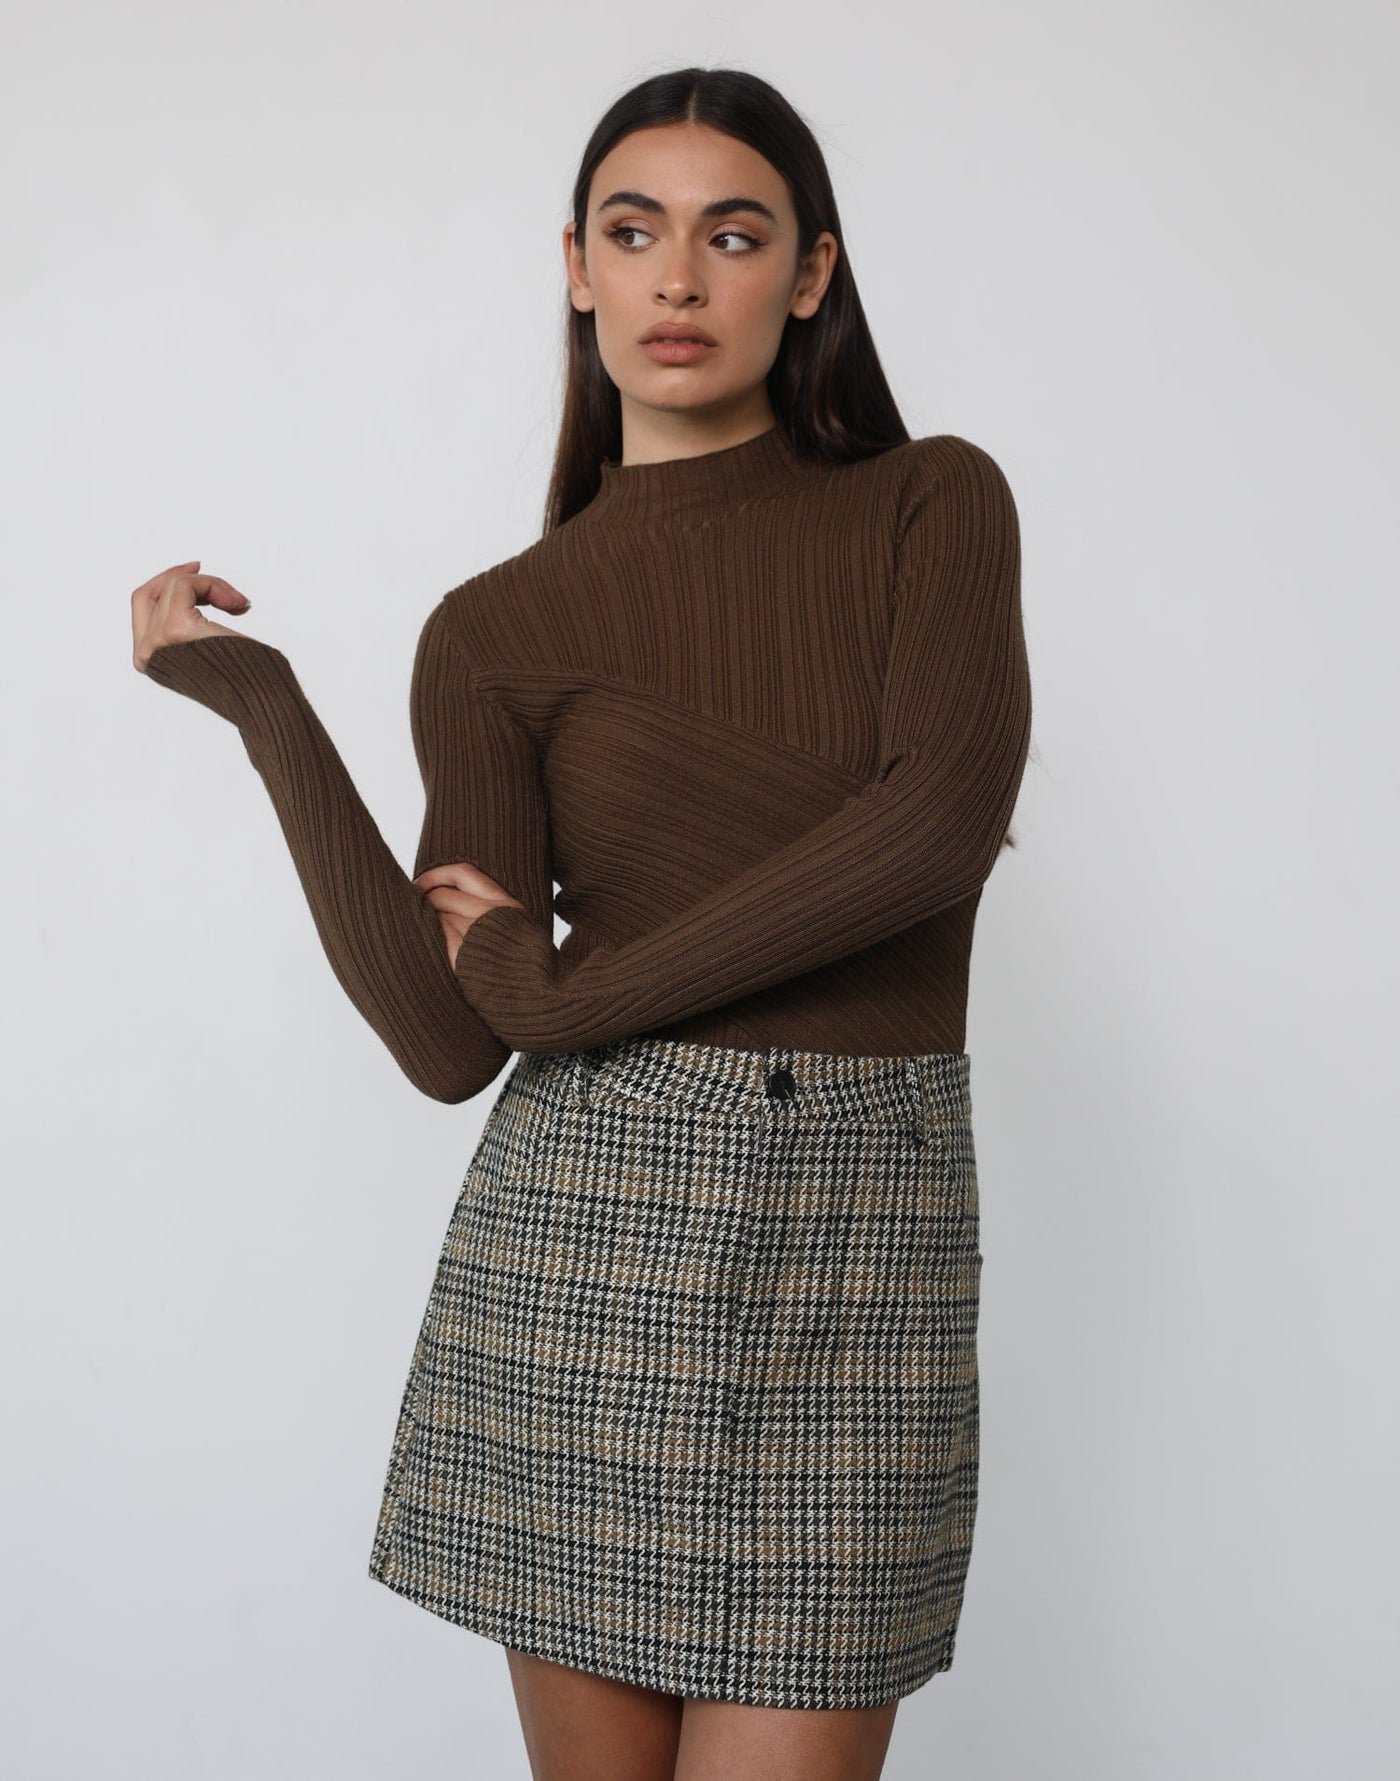 Justine Mini Skirt - Mini Skirt - Women's Skirt - Charcoal Clothing